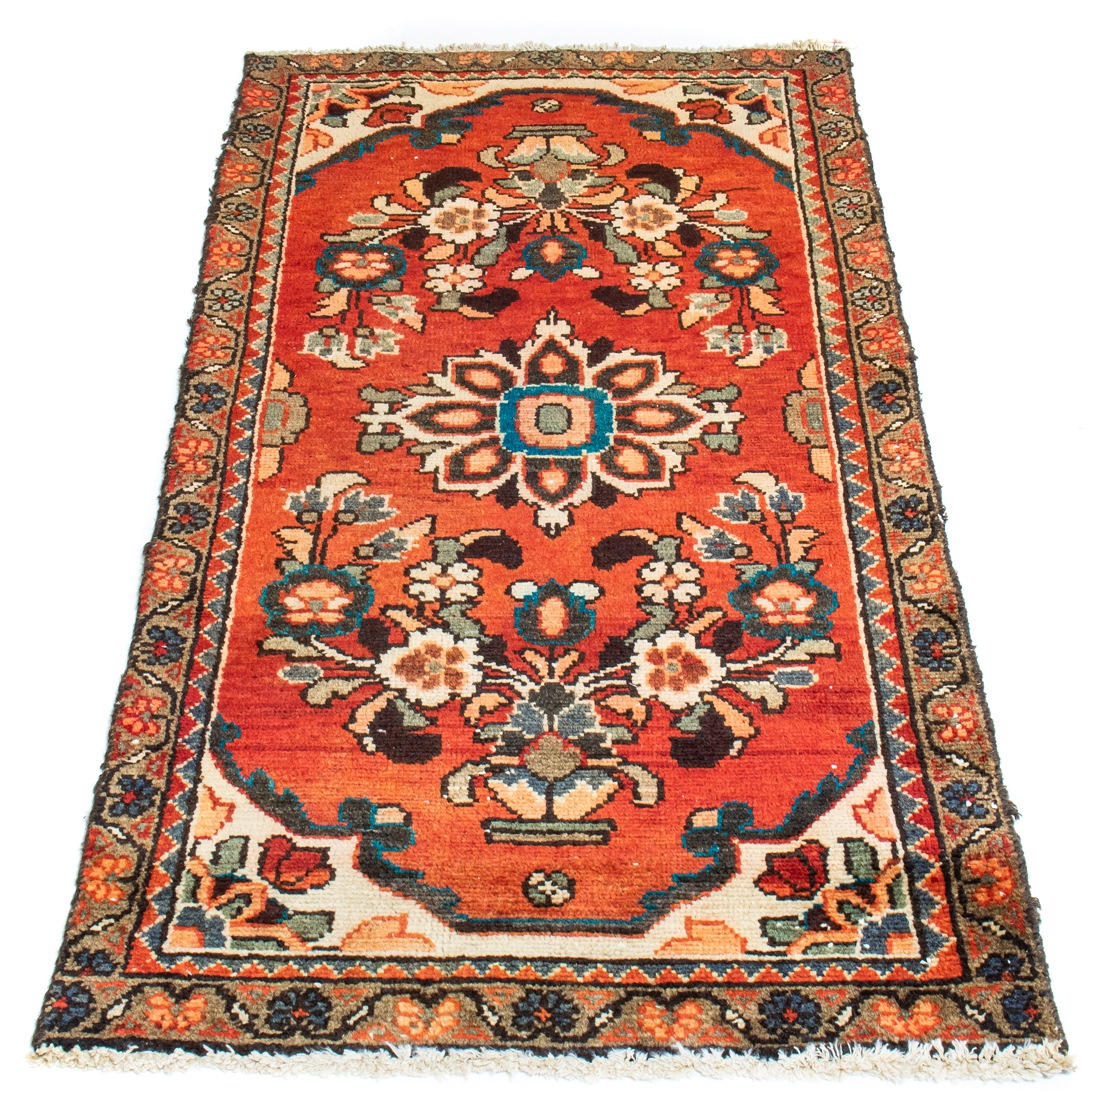 A HAMADAN CARPET A Hamadan carpet,